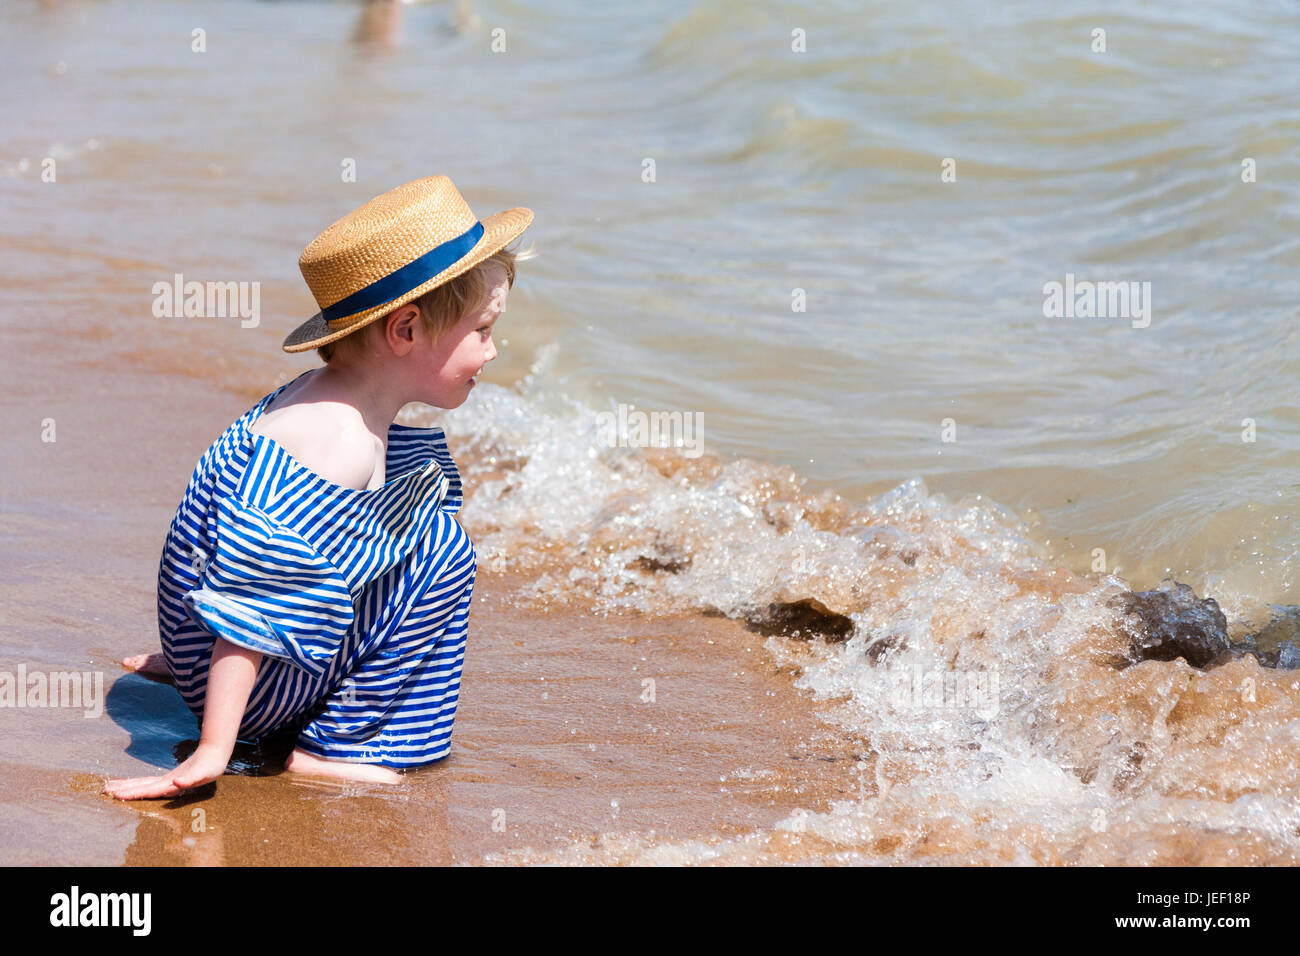 Rubia caucásica, muchacho, niño de 4-5 años, arrodillado en el surf en la playa, vestida de azul y sombrero de paja y traje de playa Victoriano blanco. Foto de stock